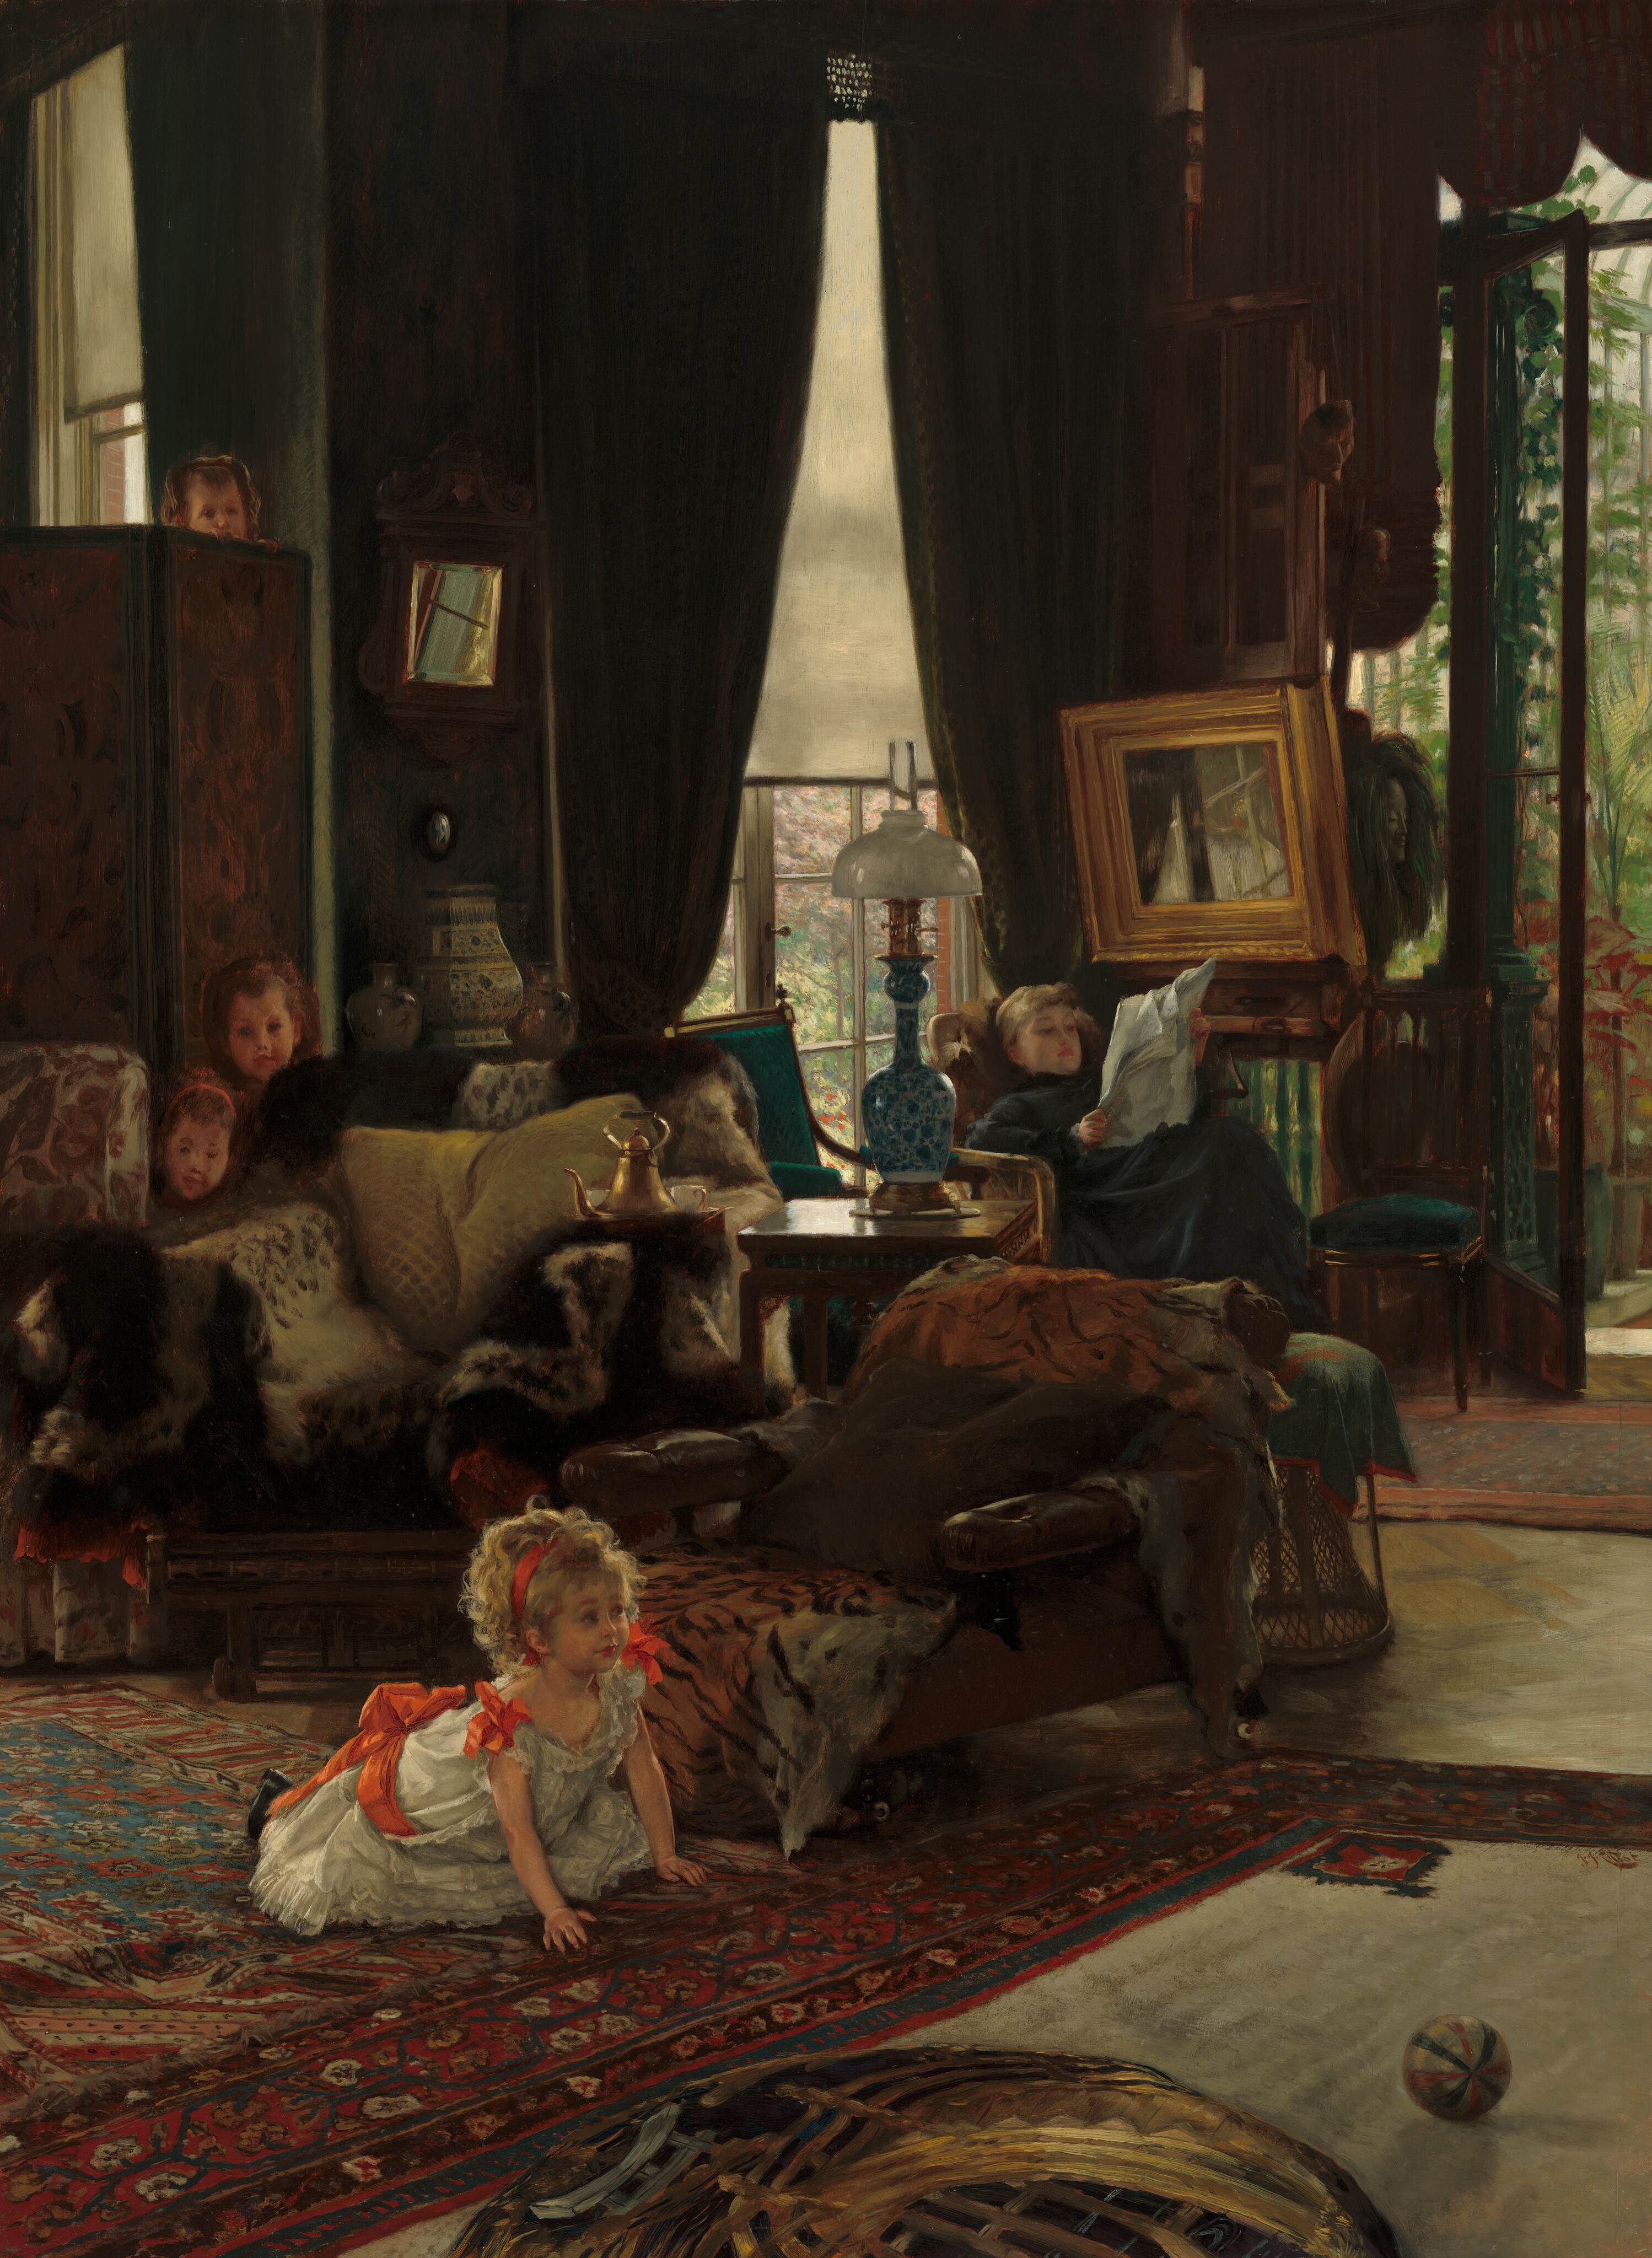 Bújócska by James Tissot - 1877 körül - 73.4 x 53.9 cm 